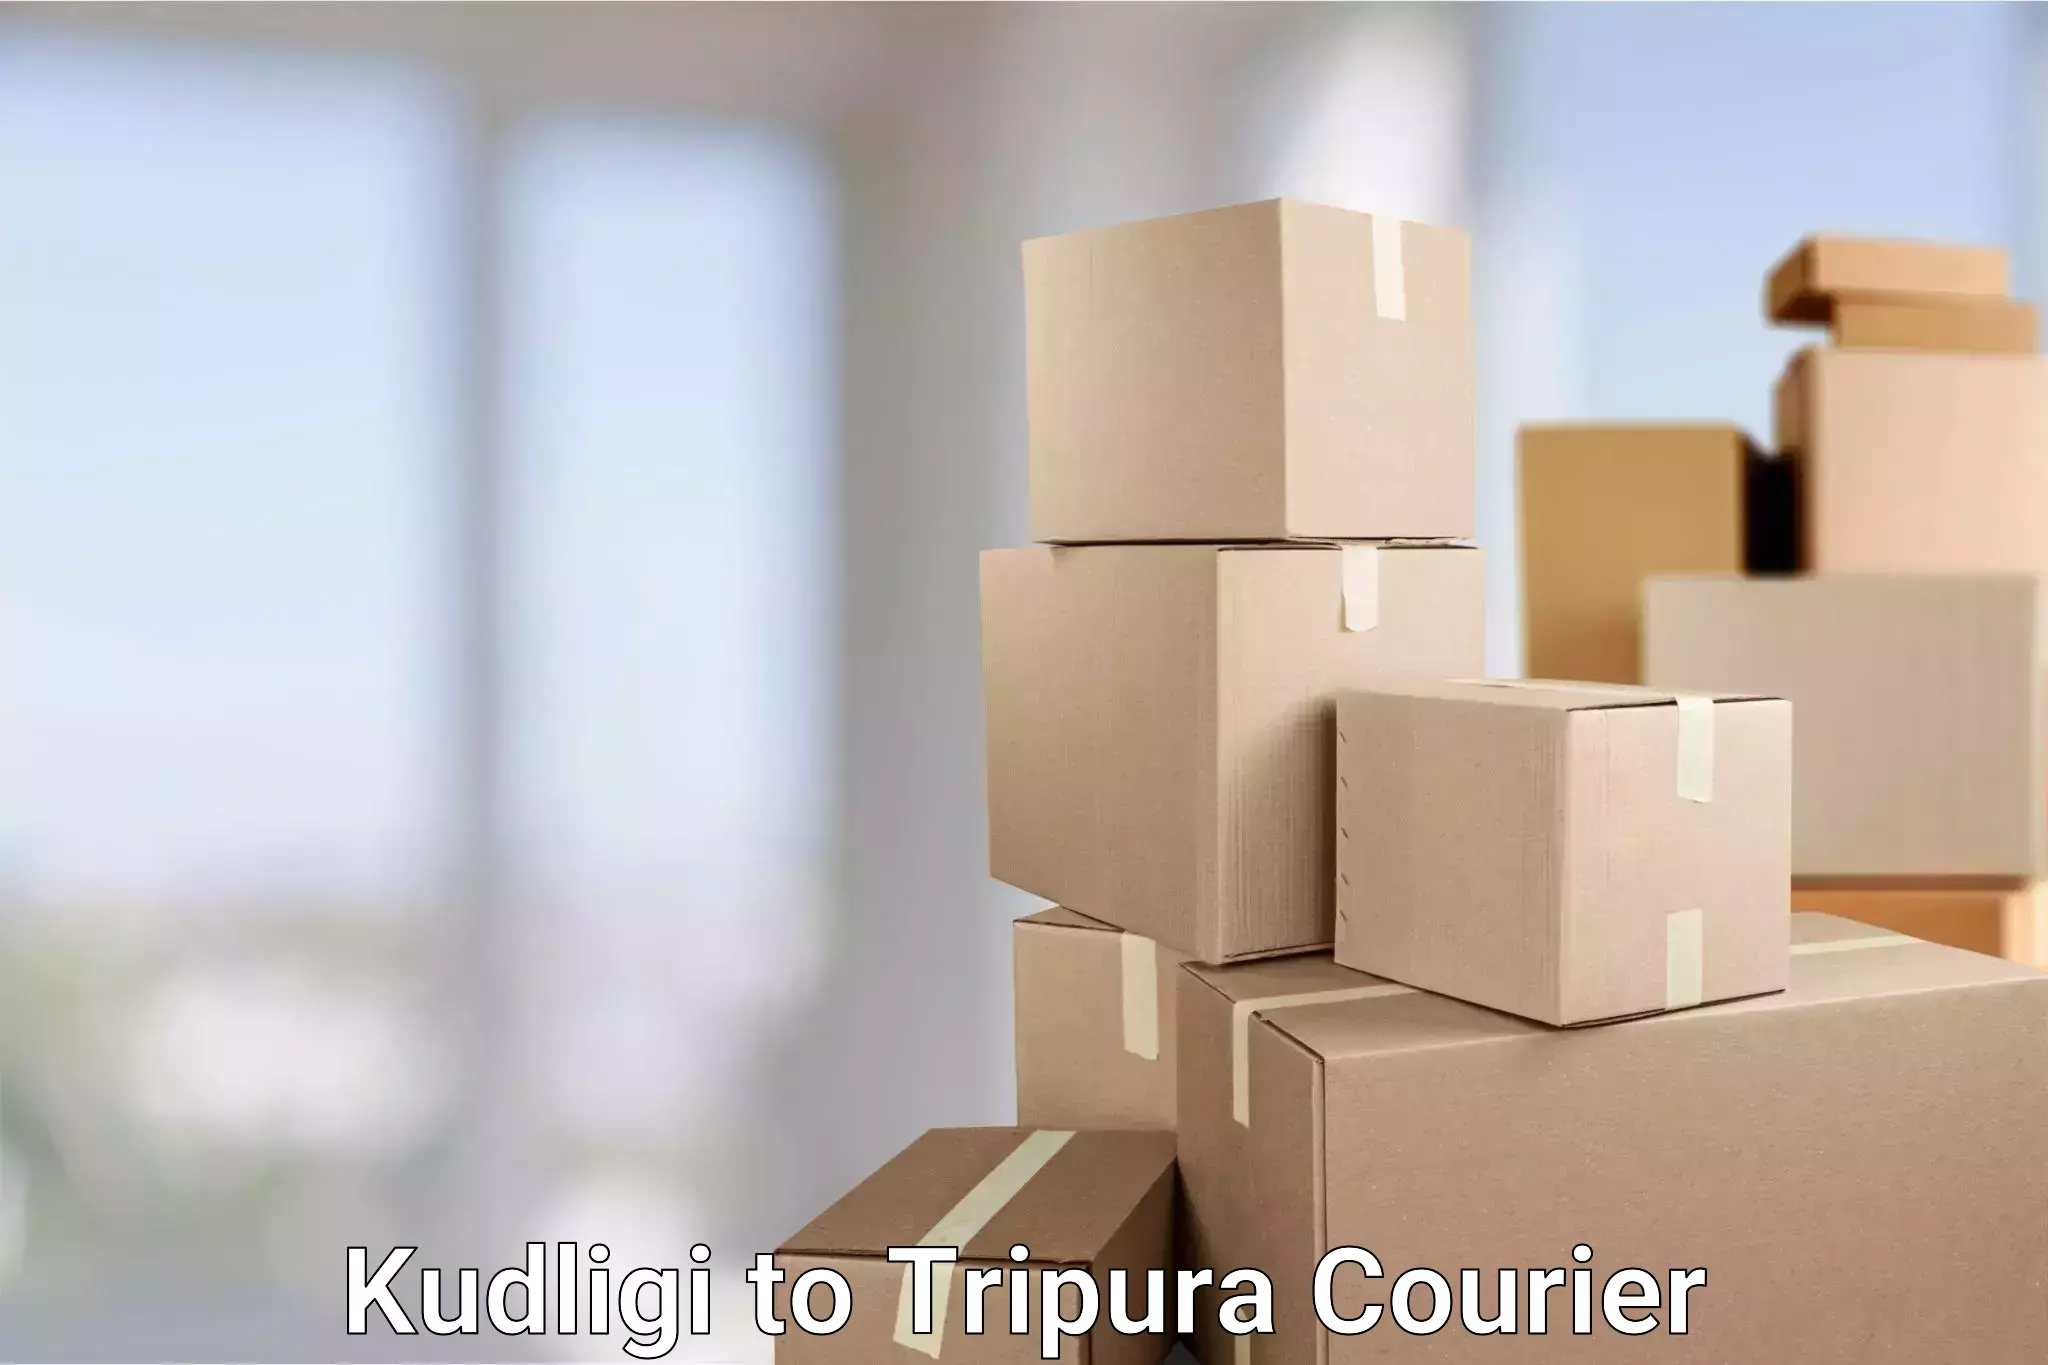 Modern parcel services Kudligi to Bishalgarh